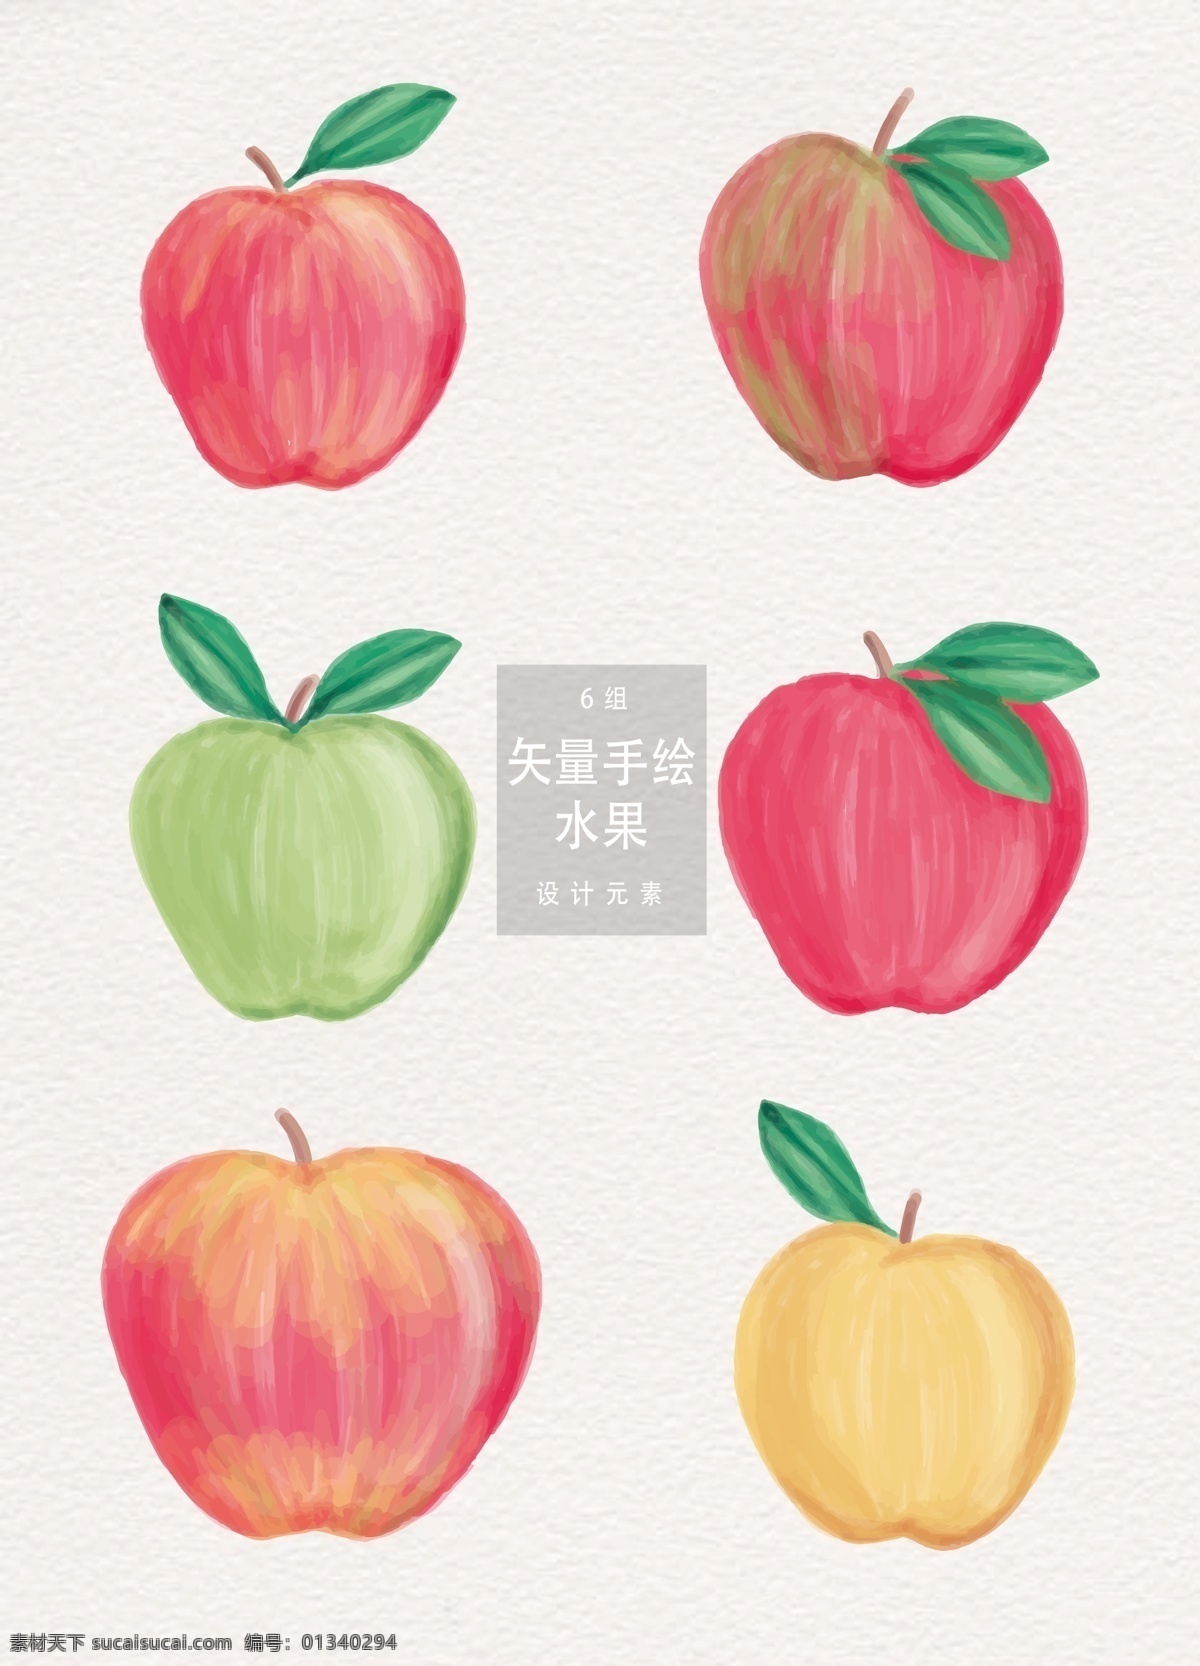 手绘 苹果 水果 矢量 矢量素材 夏季 植物 手绘苹果 夏天 元素 手绘水果 食物